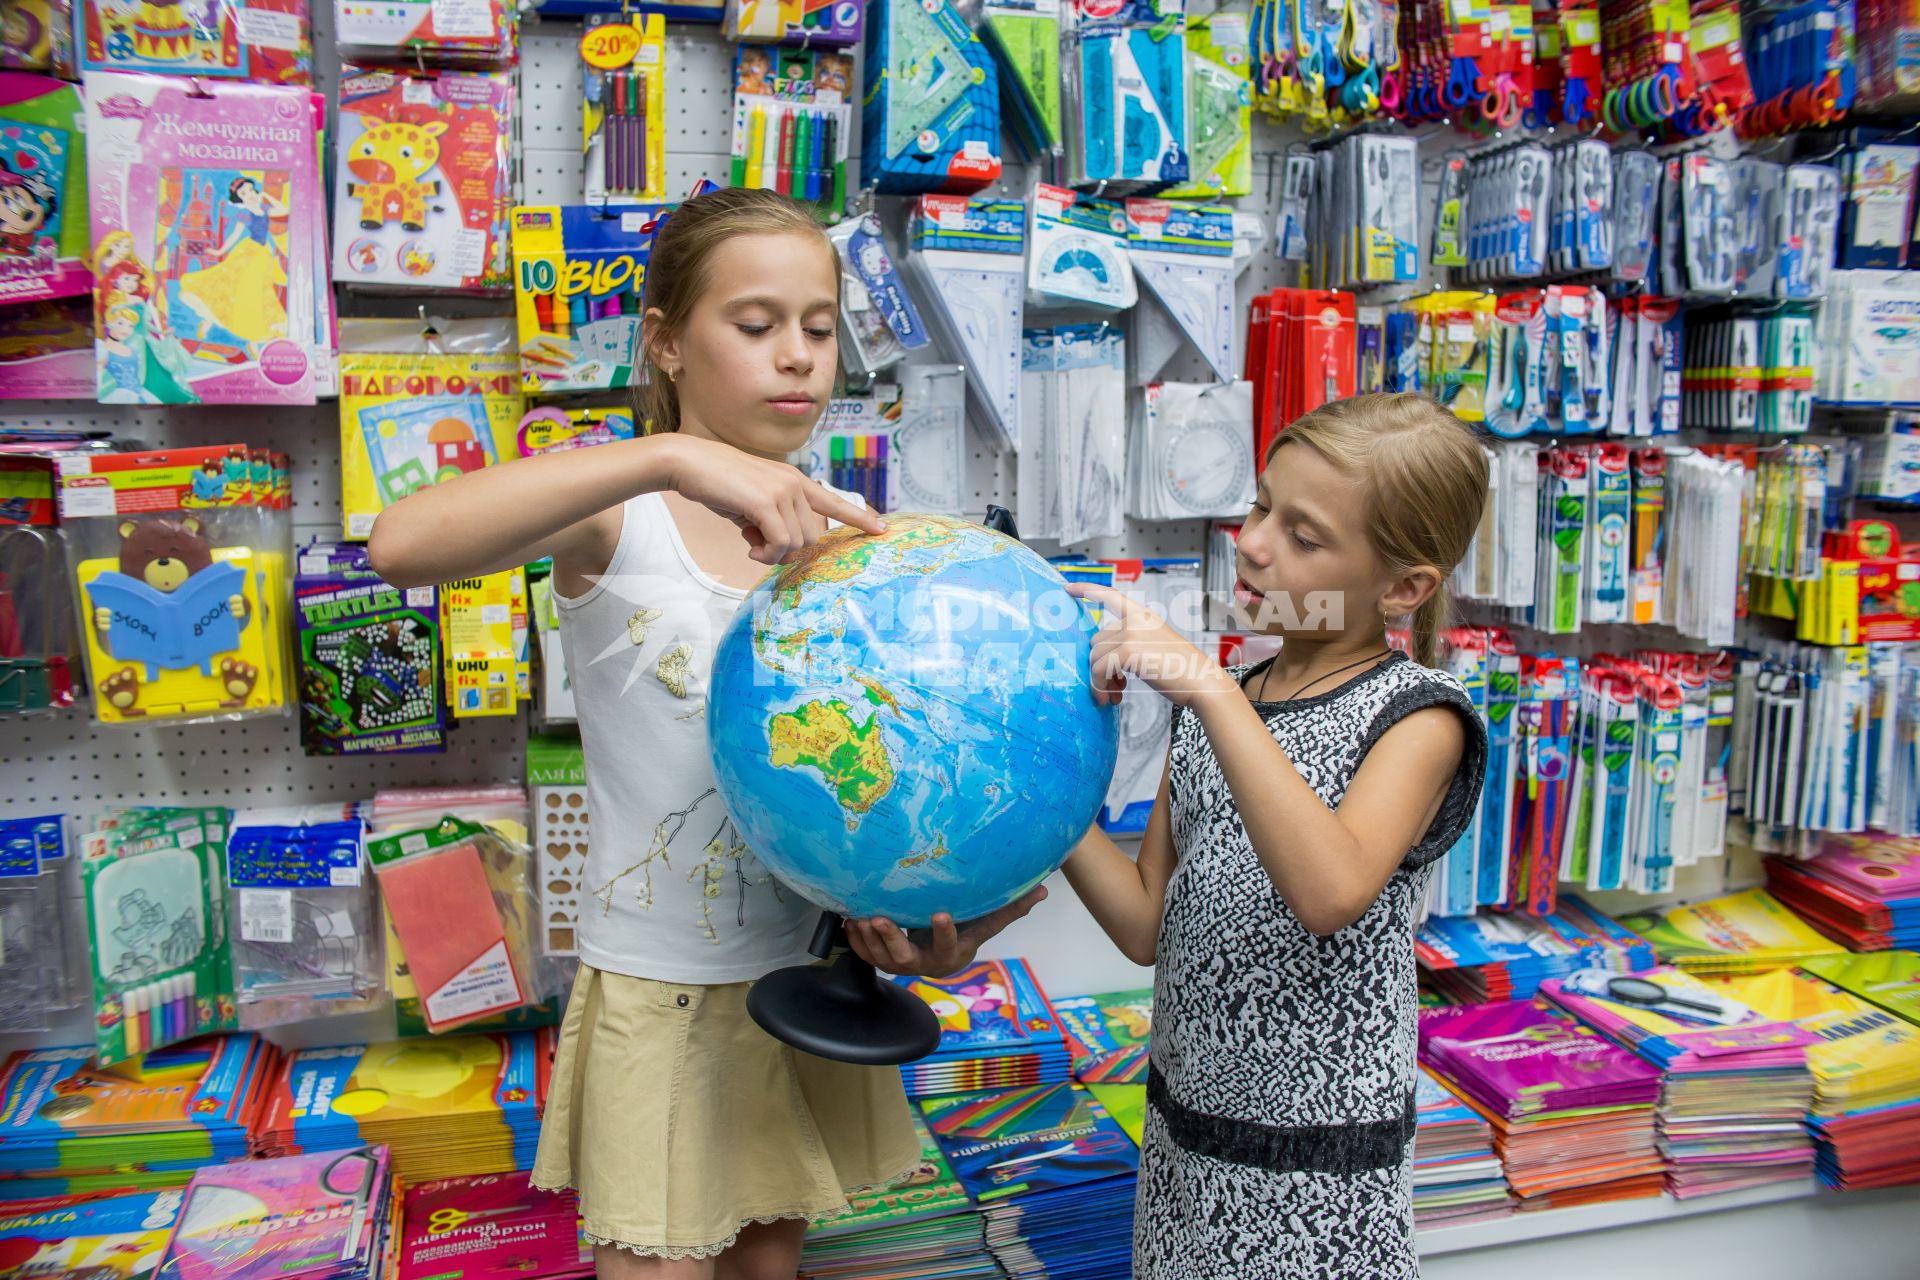 Челябинск. Девочки выбирают глобус в отделе школьных товаров.